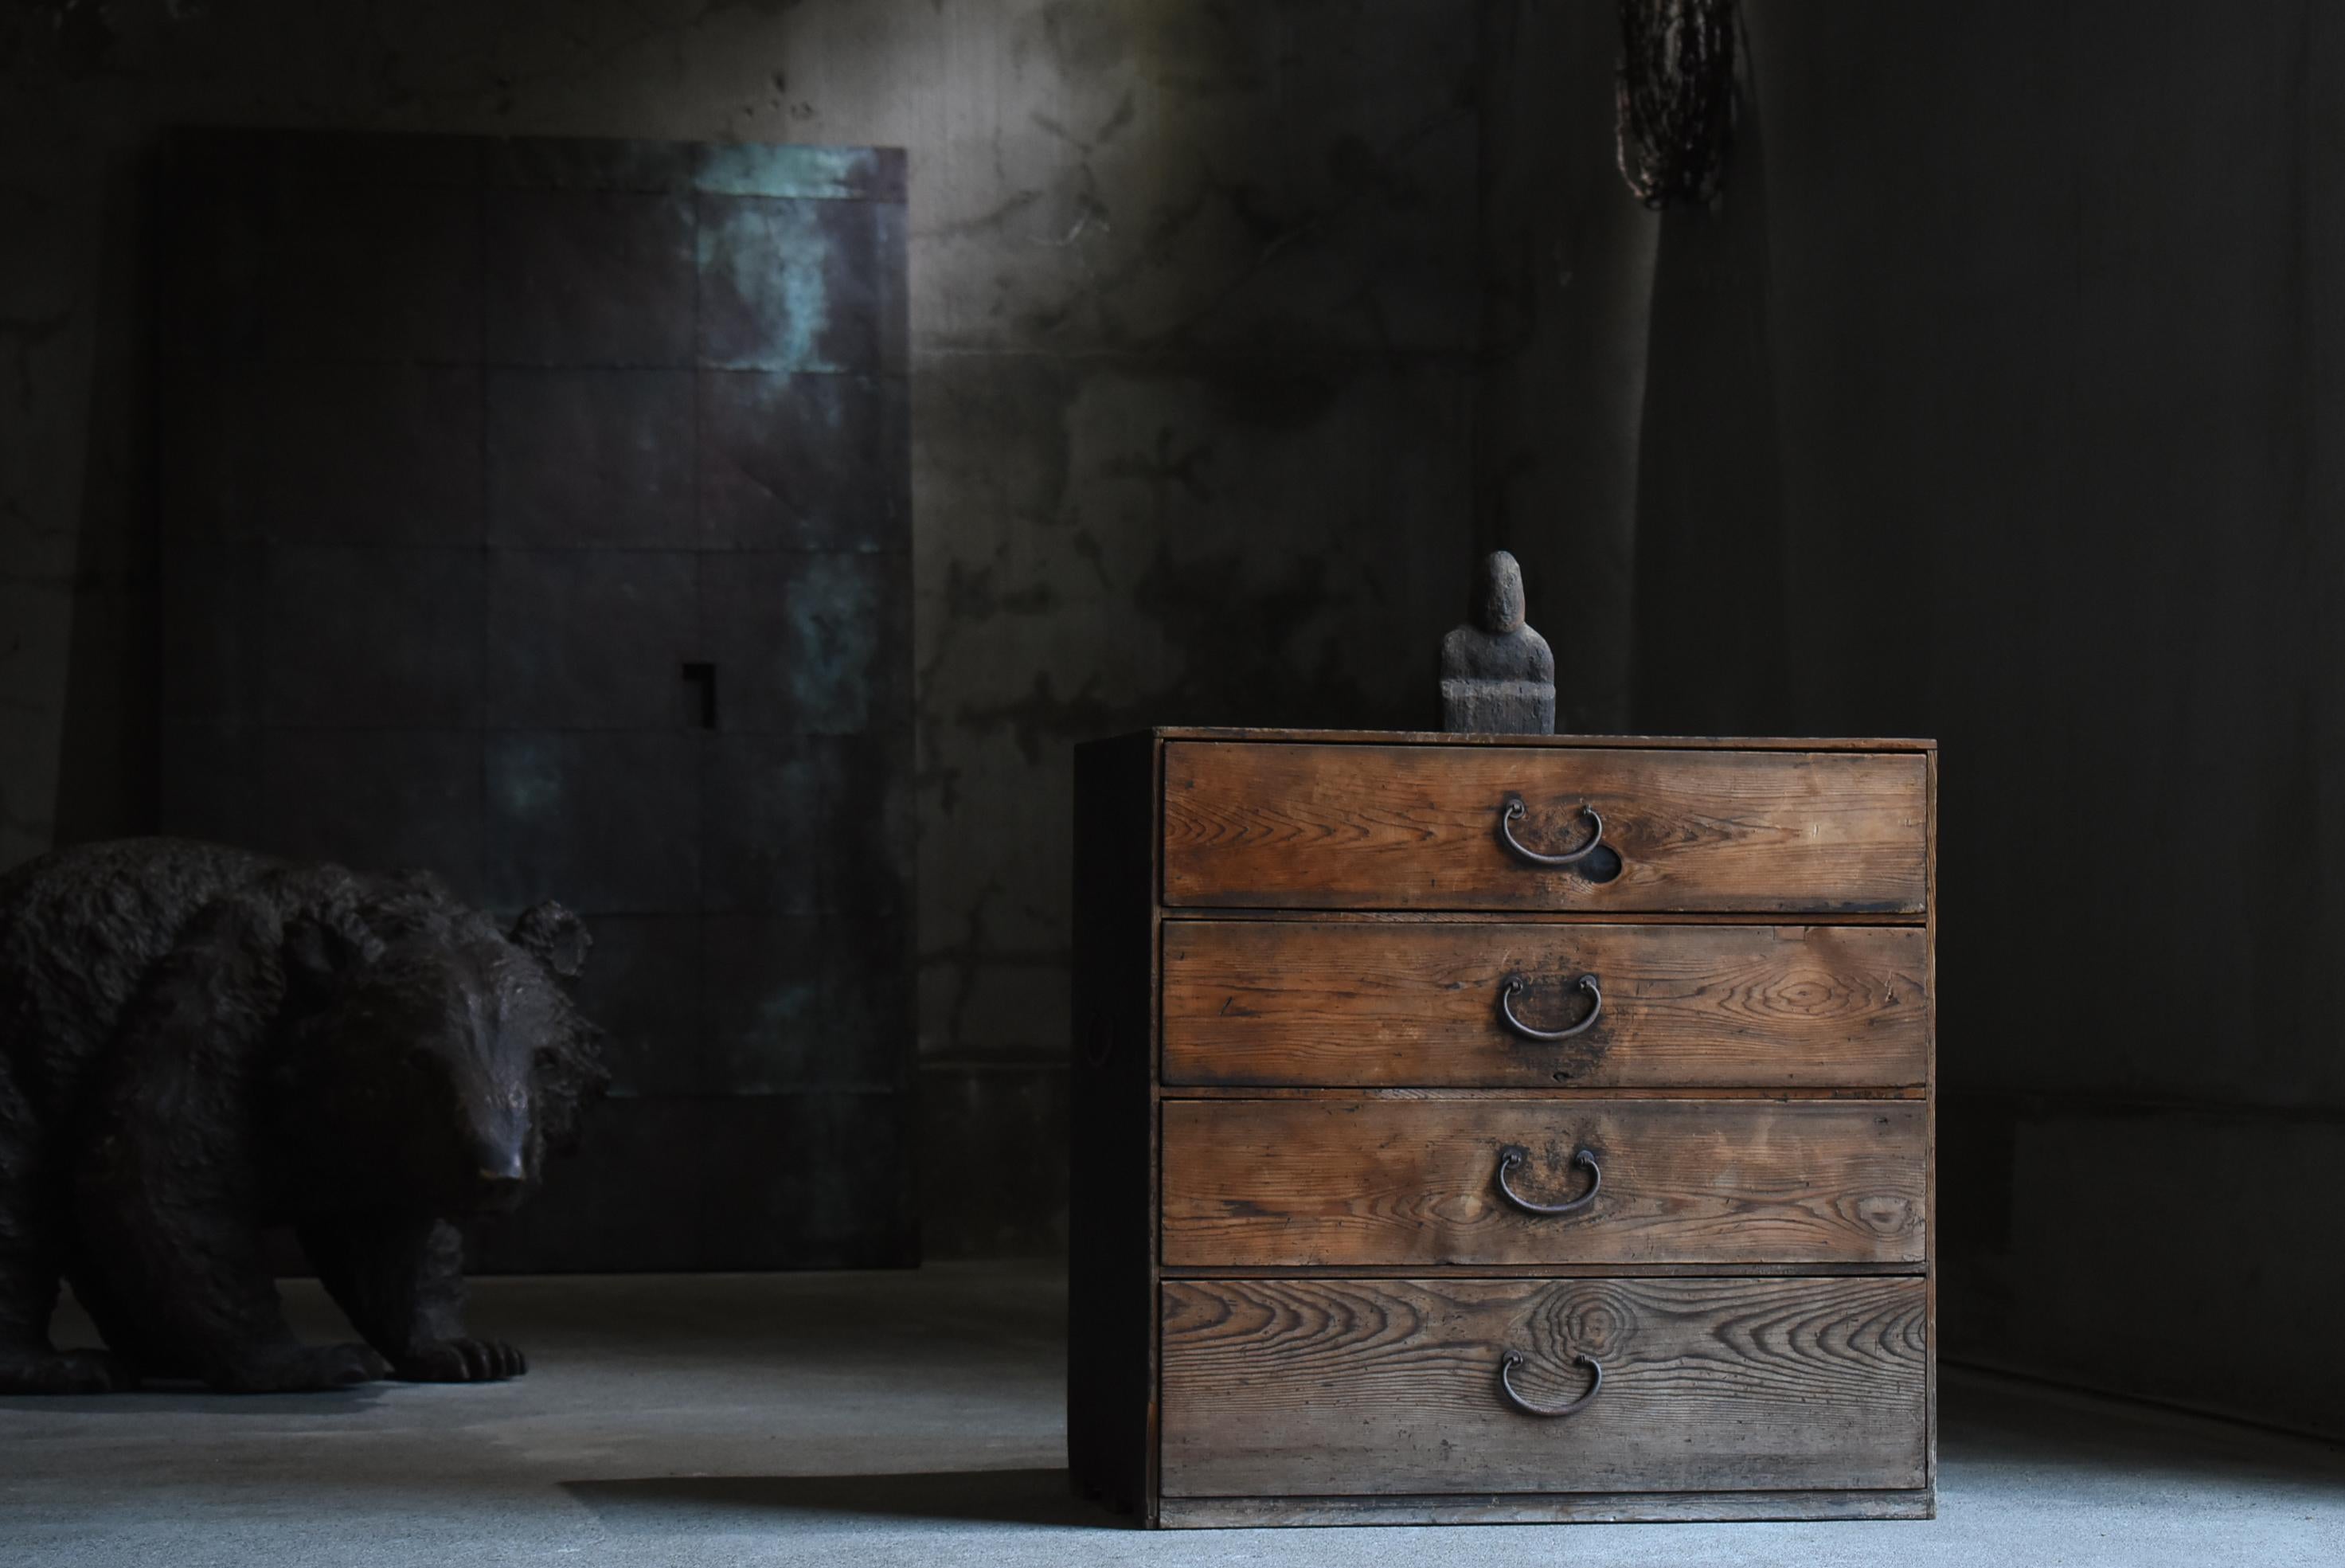 Très vieux tiroir de rangement japonais.
Le mobilier date de la période Meiji (1860-1900).
Le matériau utilisé est le cèdre.
Les poignées sont en fer.

Le design est simple et épuré.
Il s'agit d'un très beau meuble d'une rusticité toute